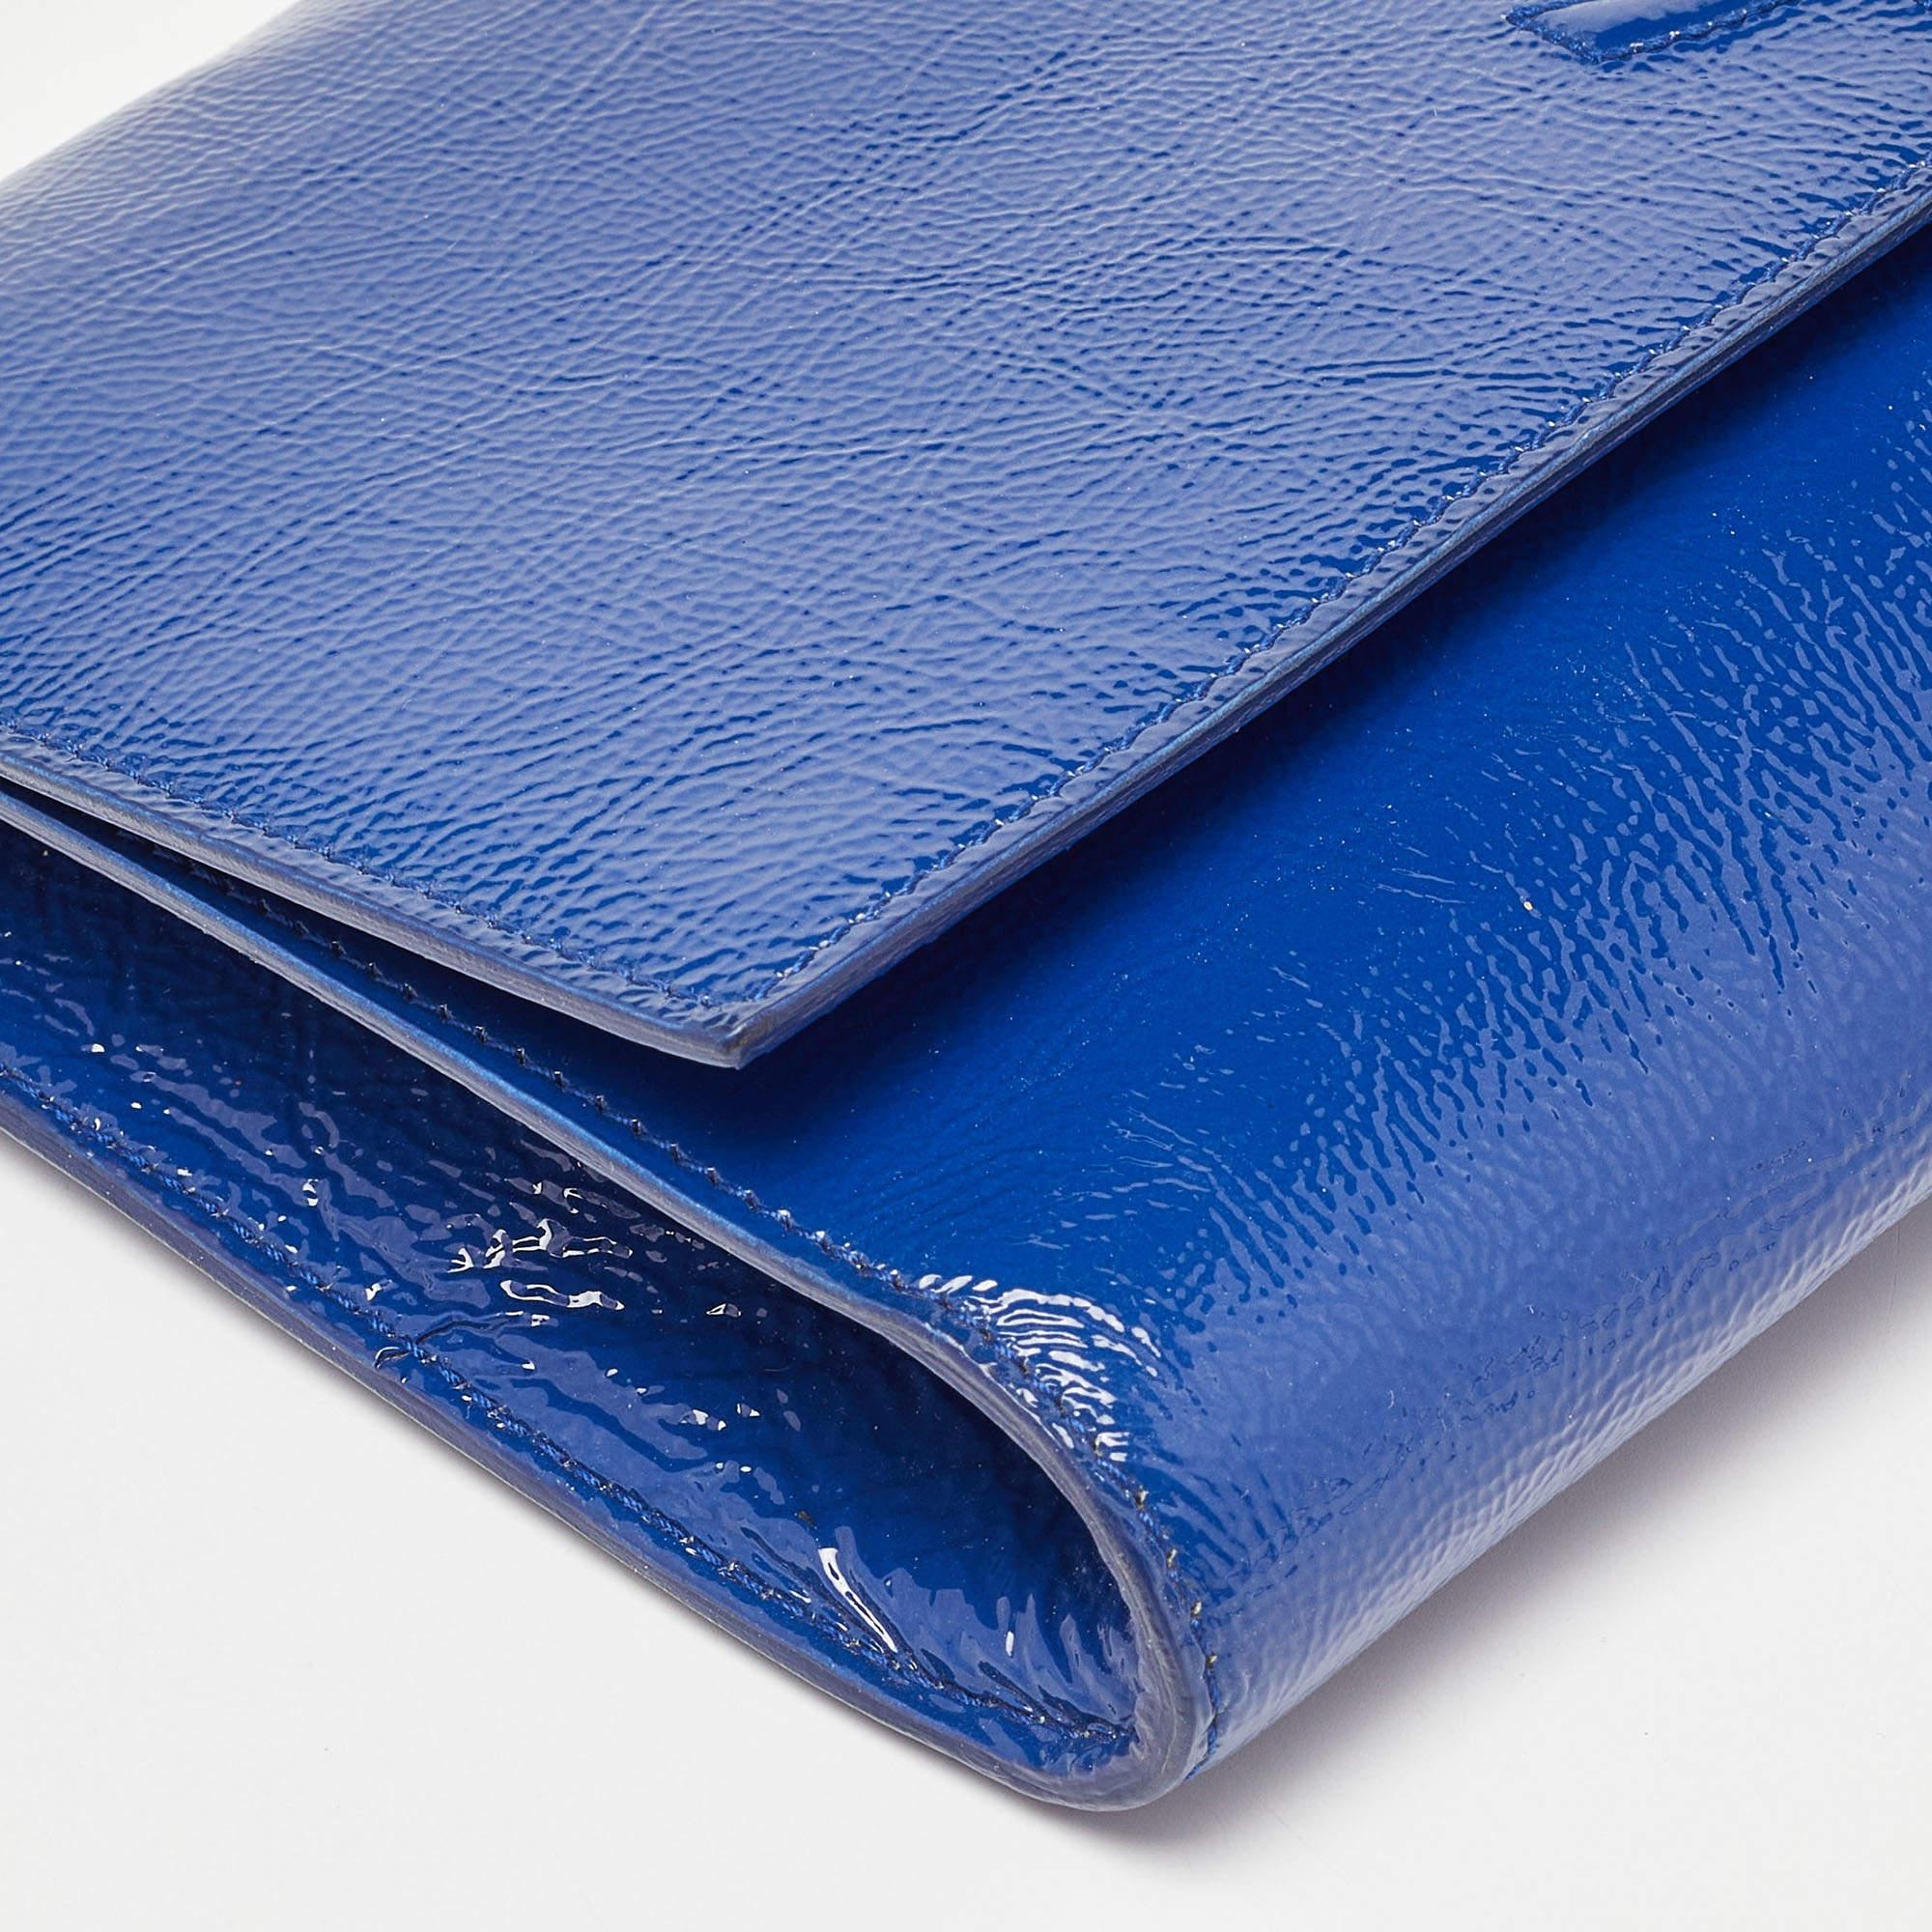 Yves Saint Laurent Blue Patent Leather Belle De Jour Flap Clutch For Sale 6